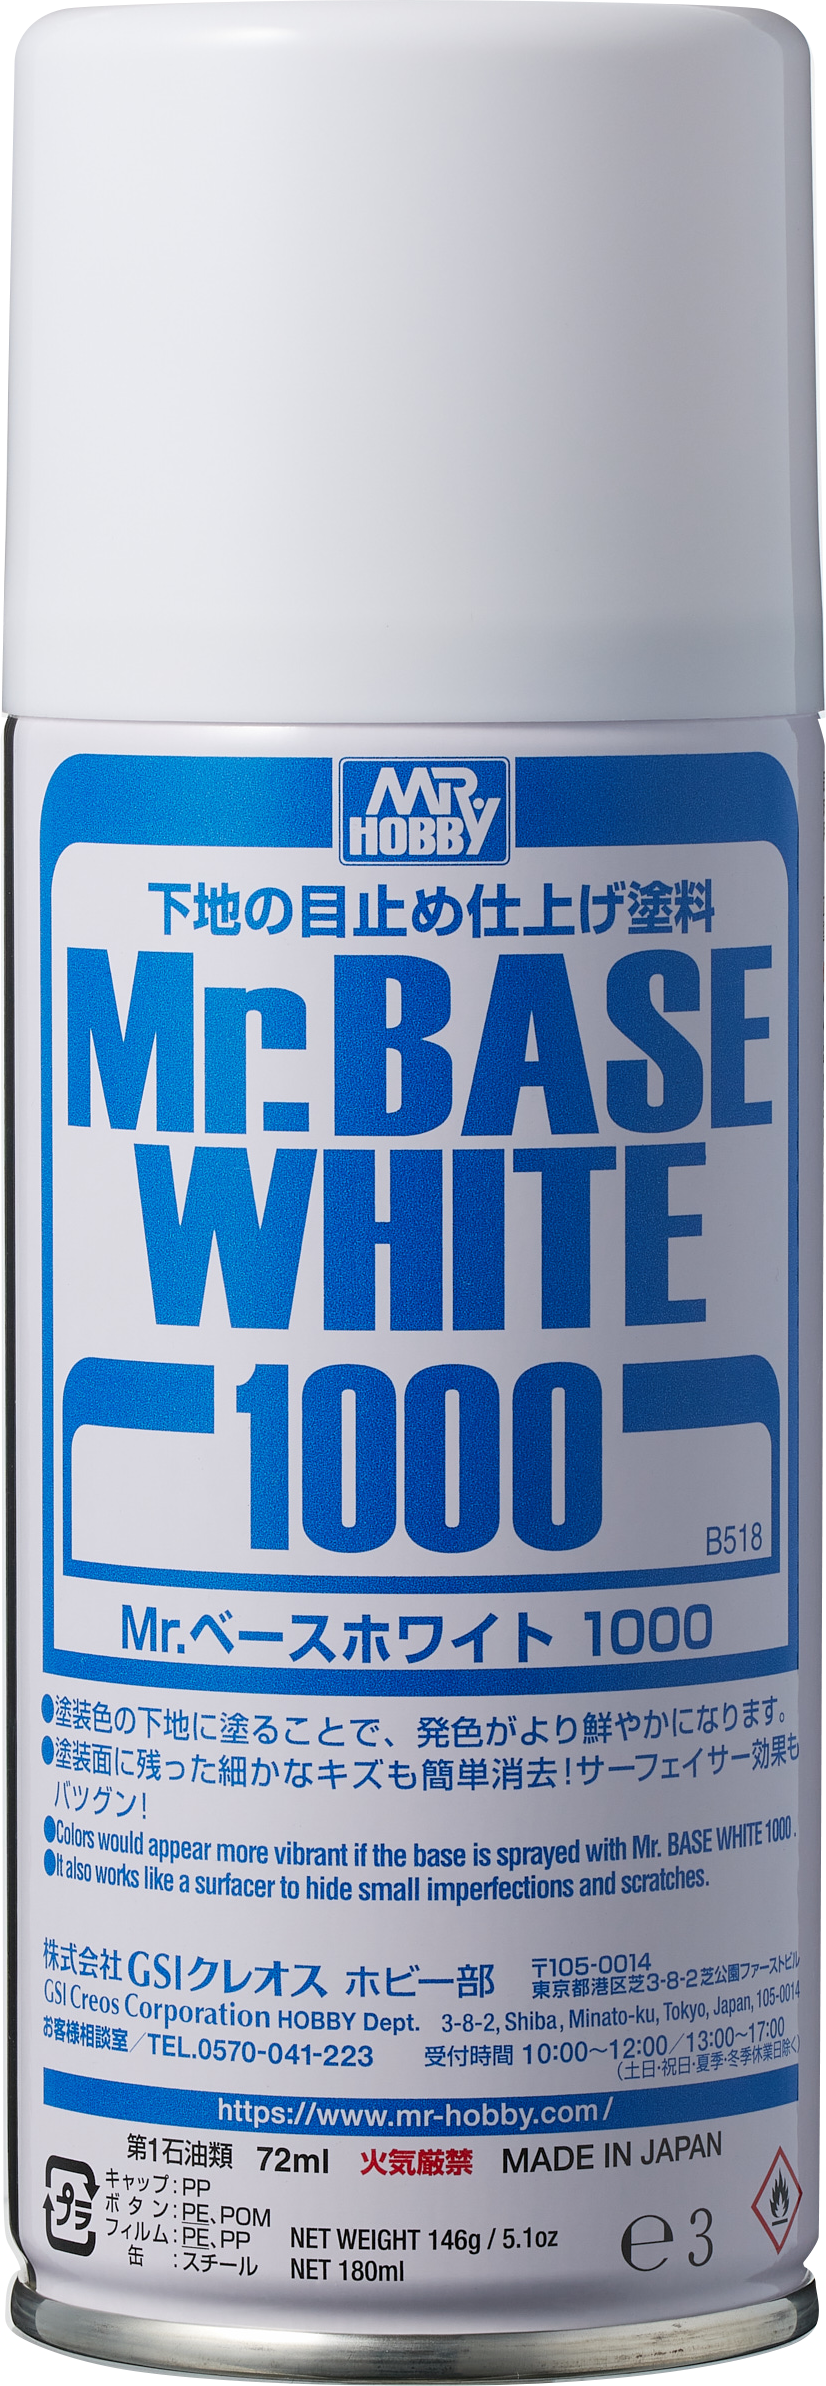 Mr.ベースホワイト1000 スプレー